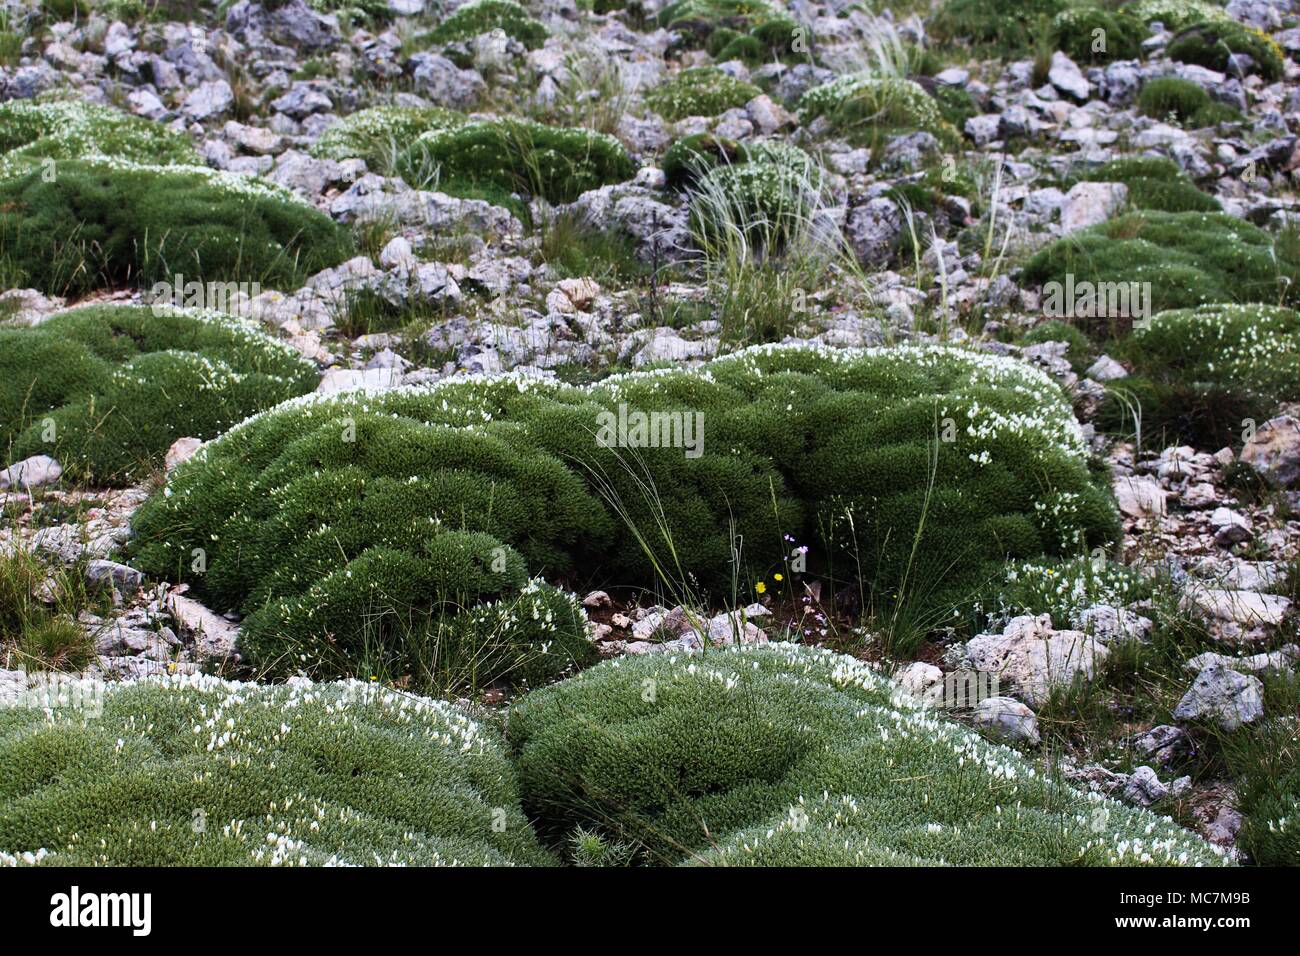 Turfs of Astragalus angustifolius Stock Photo